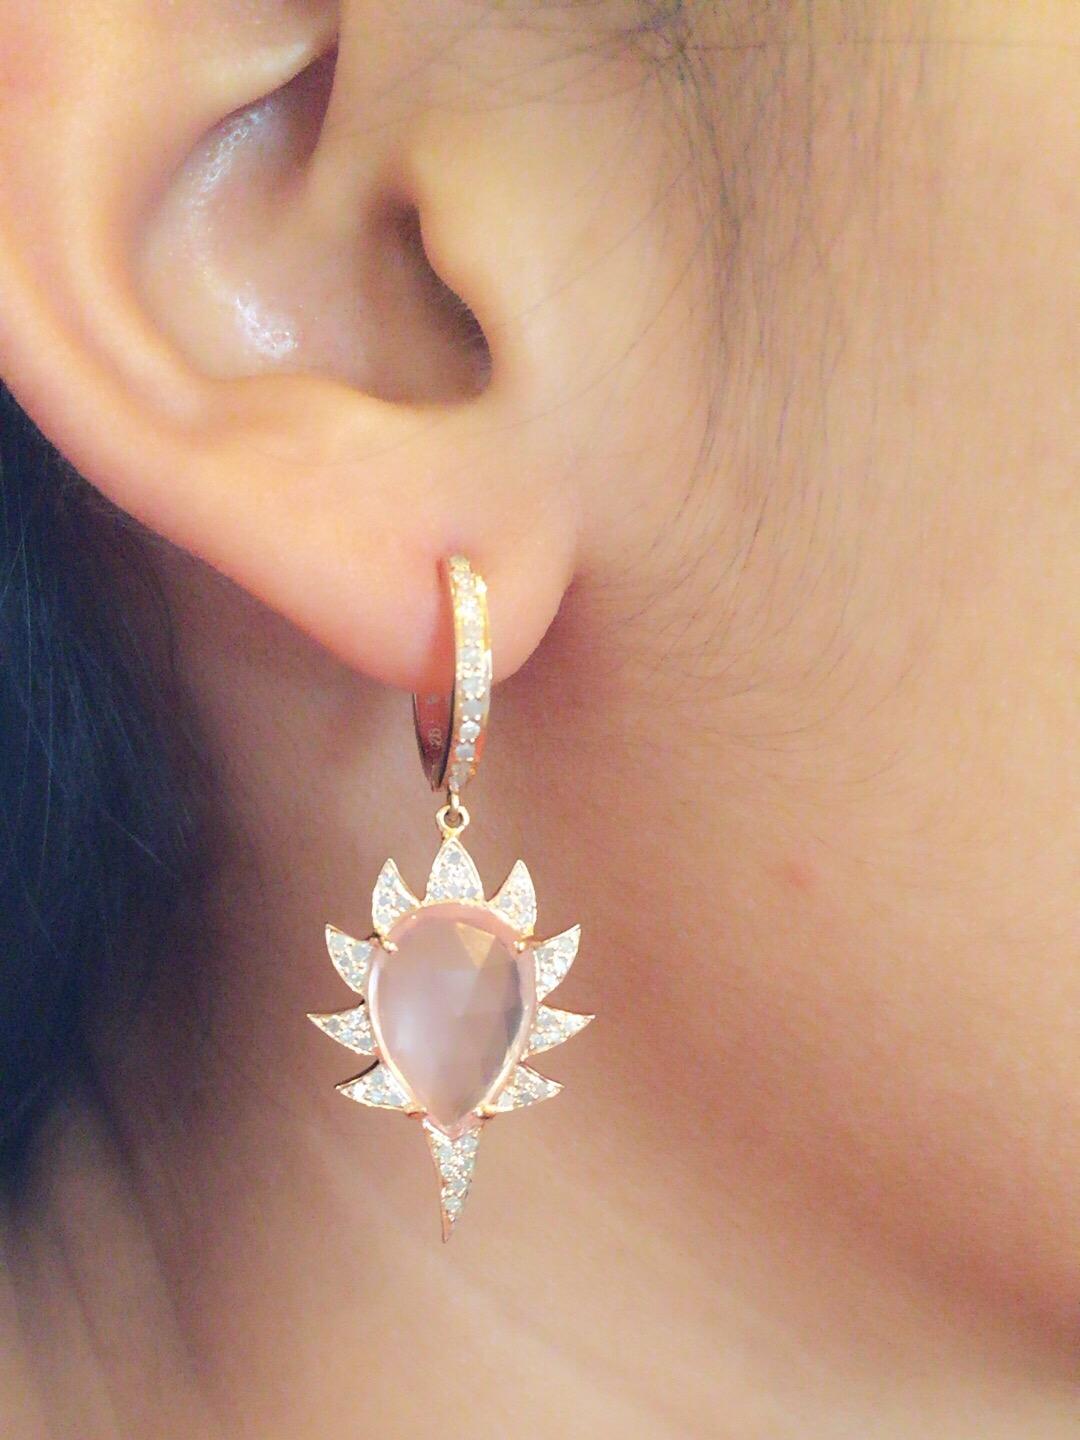 justice spiky earrings